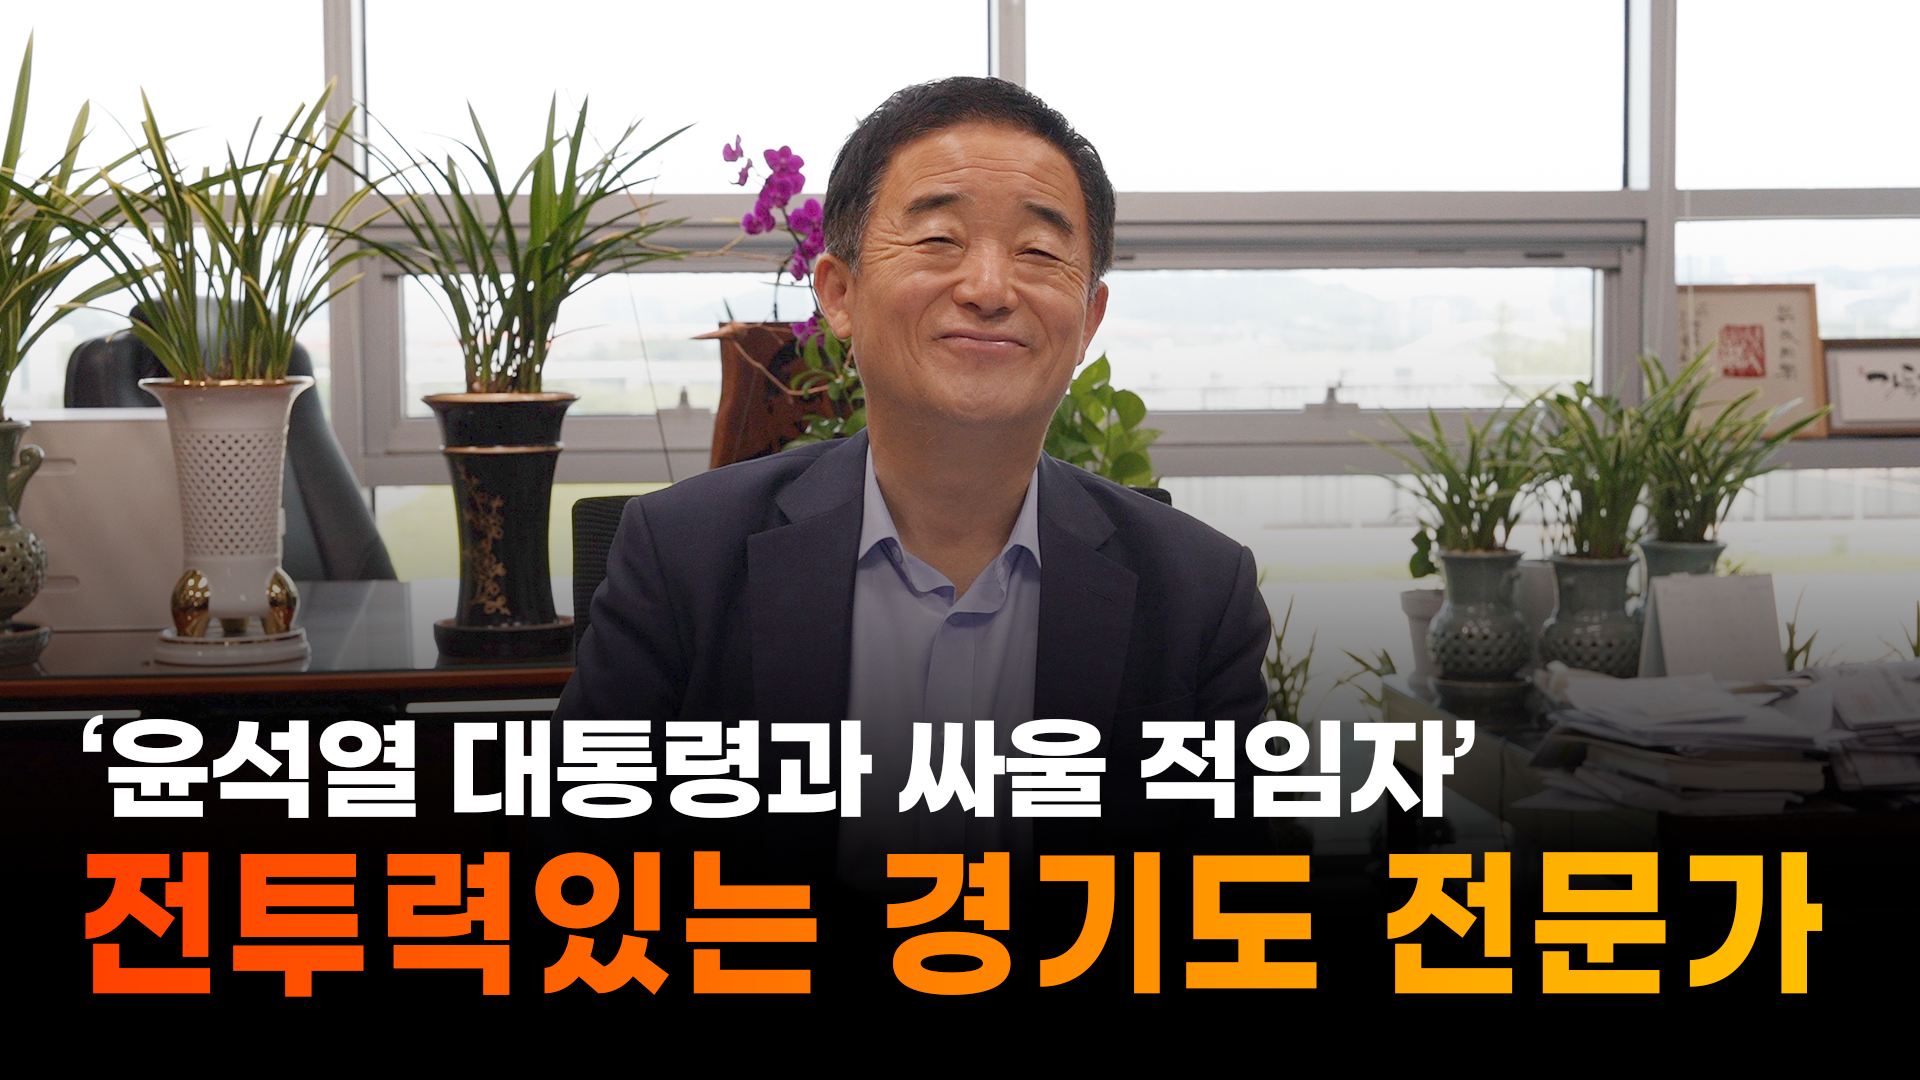 강득구 ``경기도 전문가… 윤석열 대통령과 싸울 적임자``